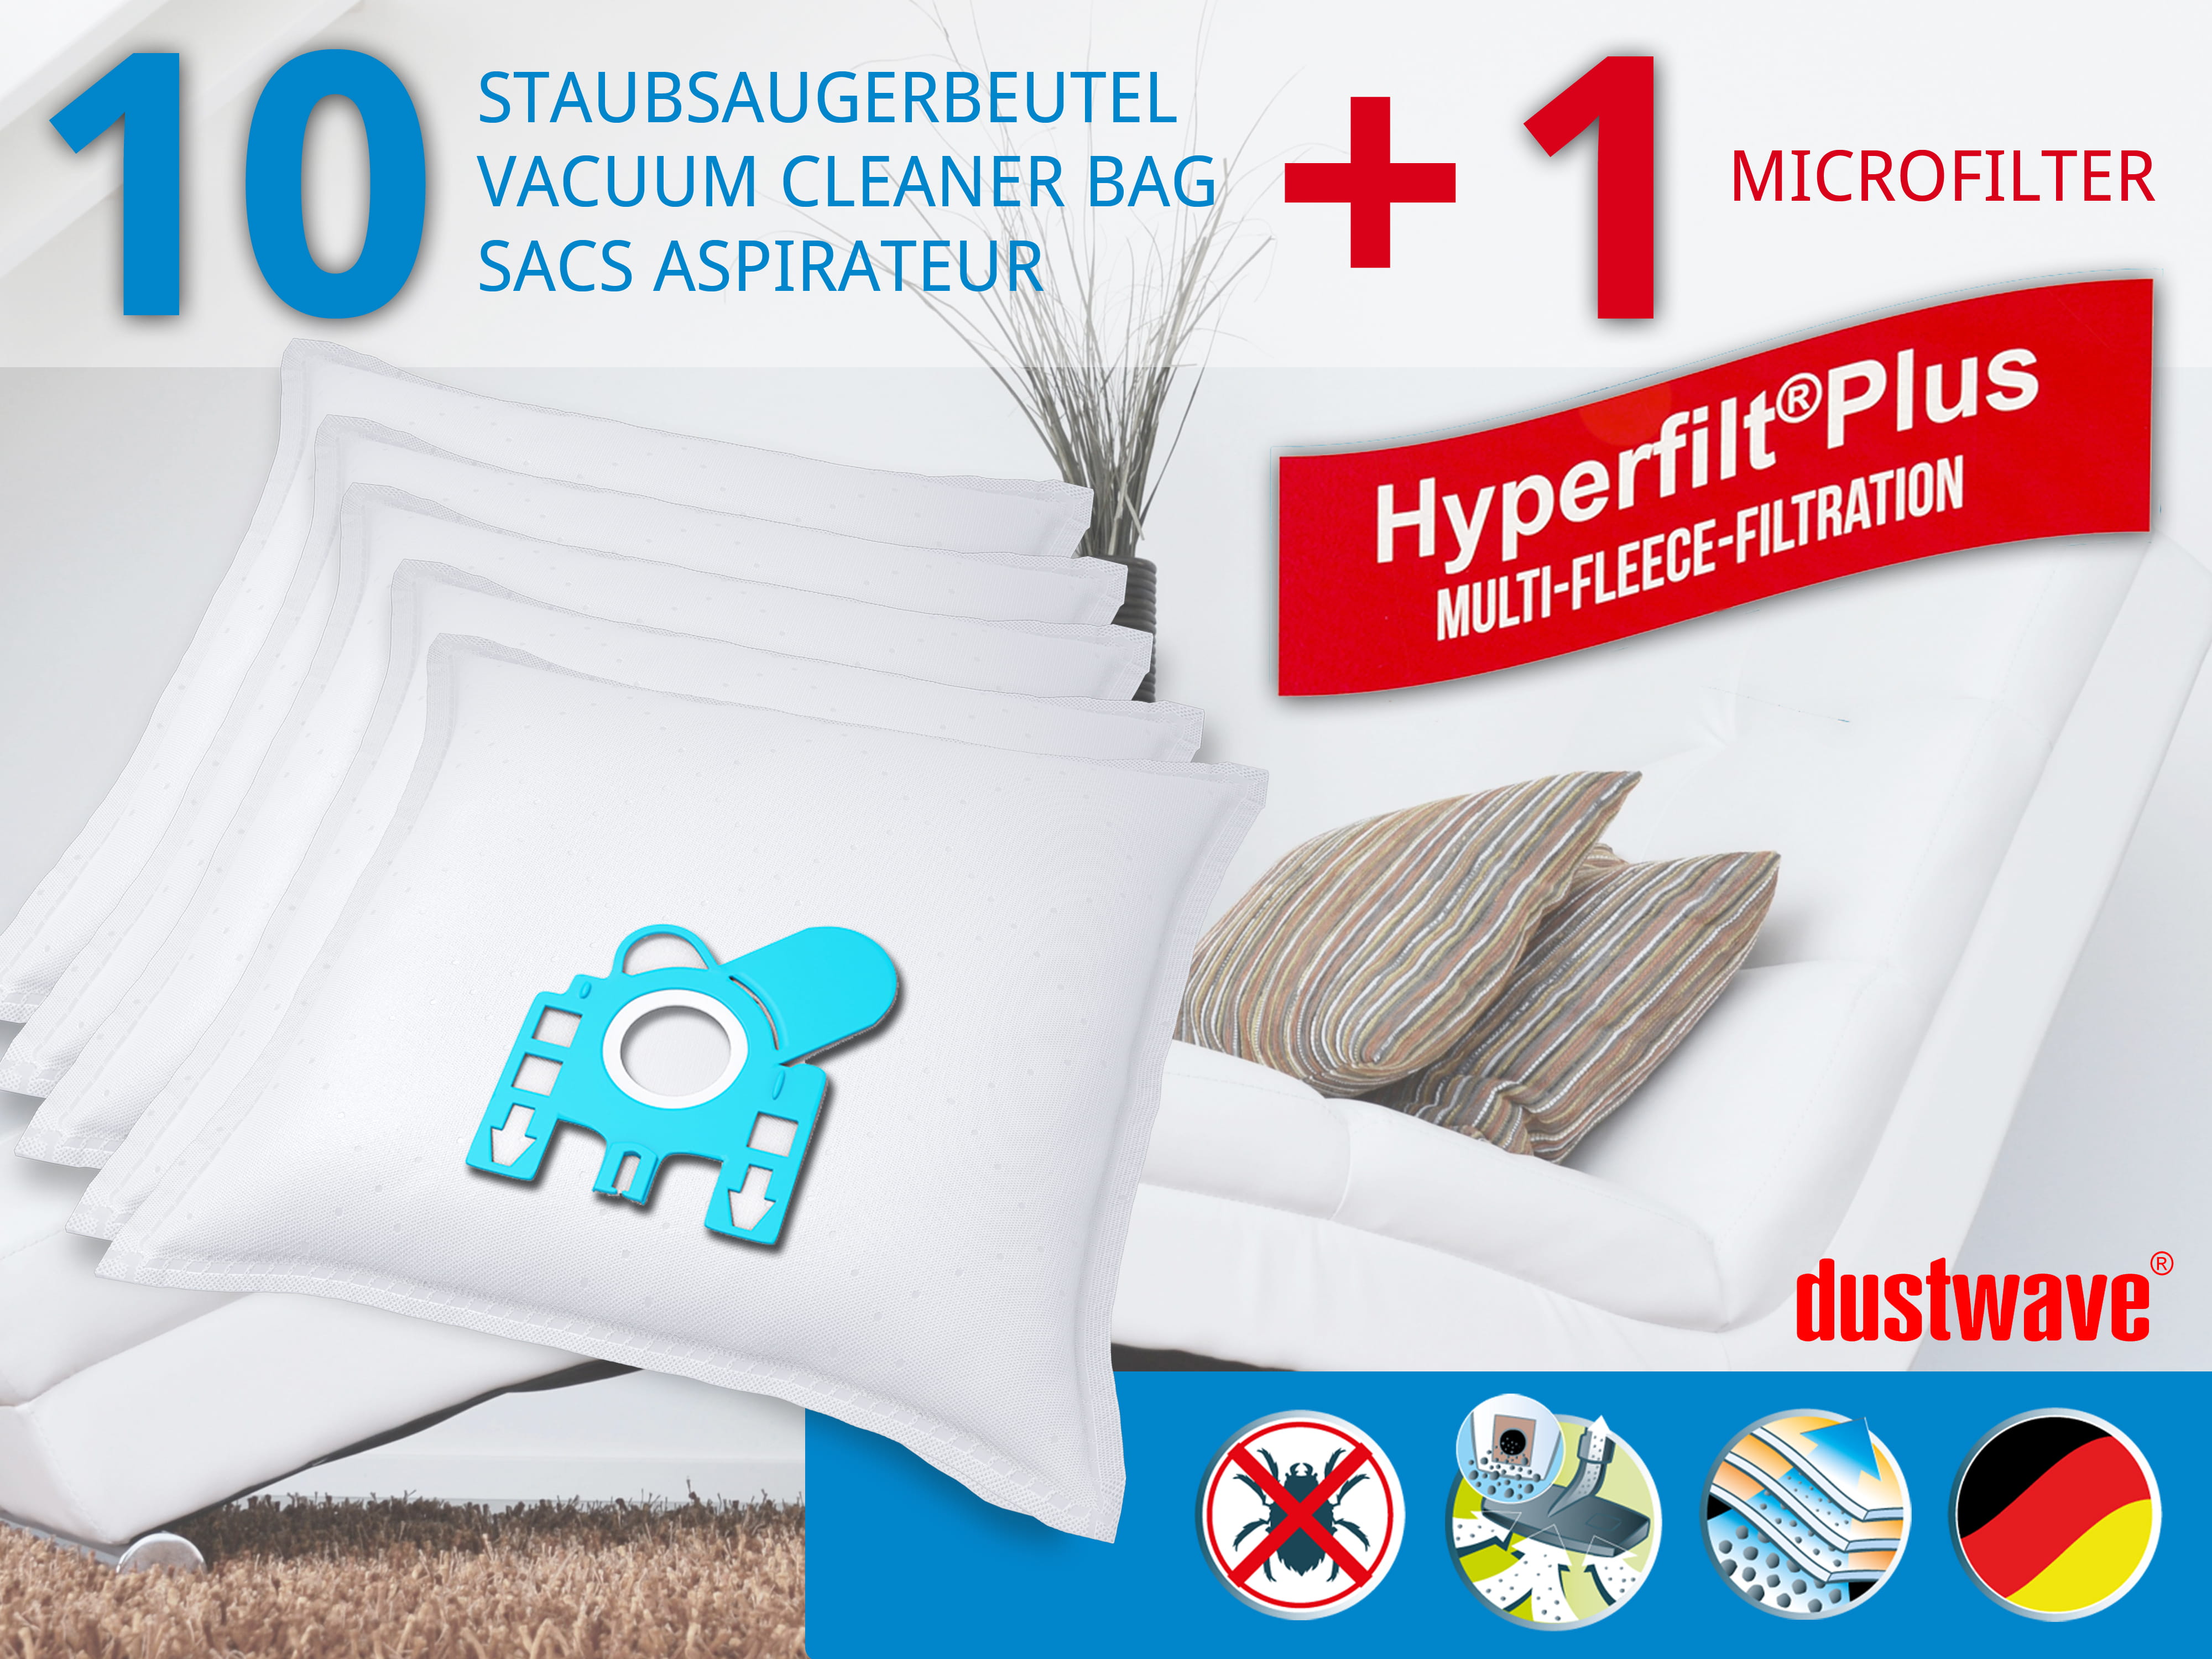 Dustwave® 10 Staubsaugerbeutel für Hoover TPP 2340 PurePower - hocheffizient, mehrlagiges Mikrovlies mit Hygieneverschluss - Made in Germany